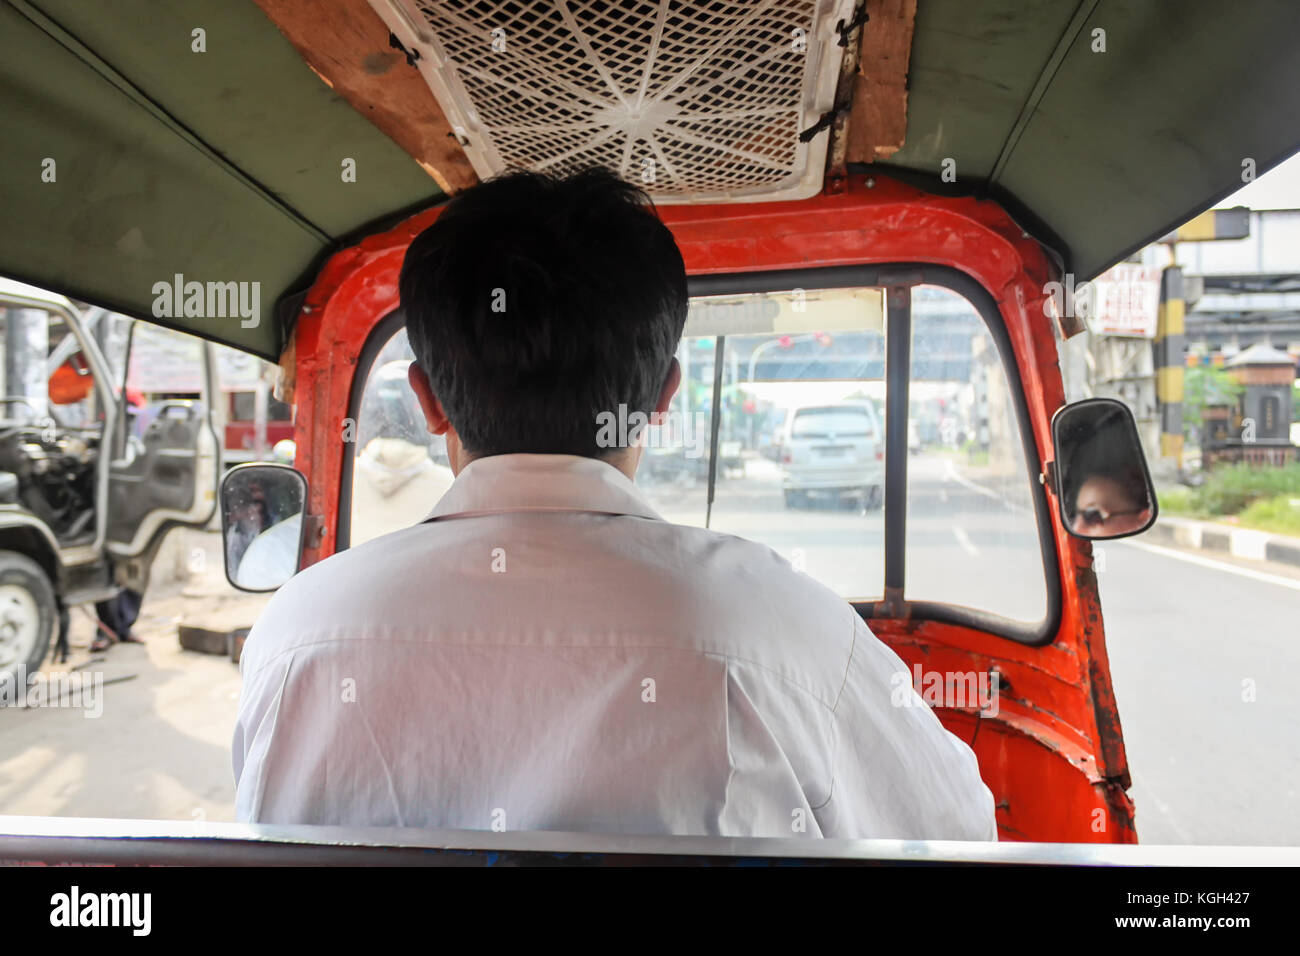 Triebfahrzeugführer tuk tuk-auto Rikscha, kleines Fahrzeug typisch für Jakarta, Indonesien Stockfoto